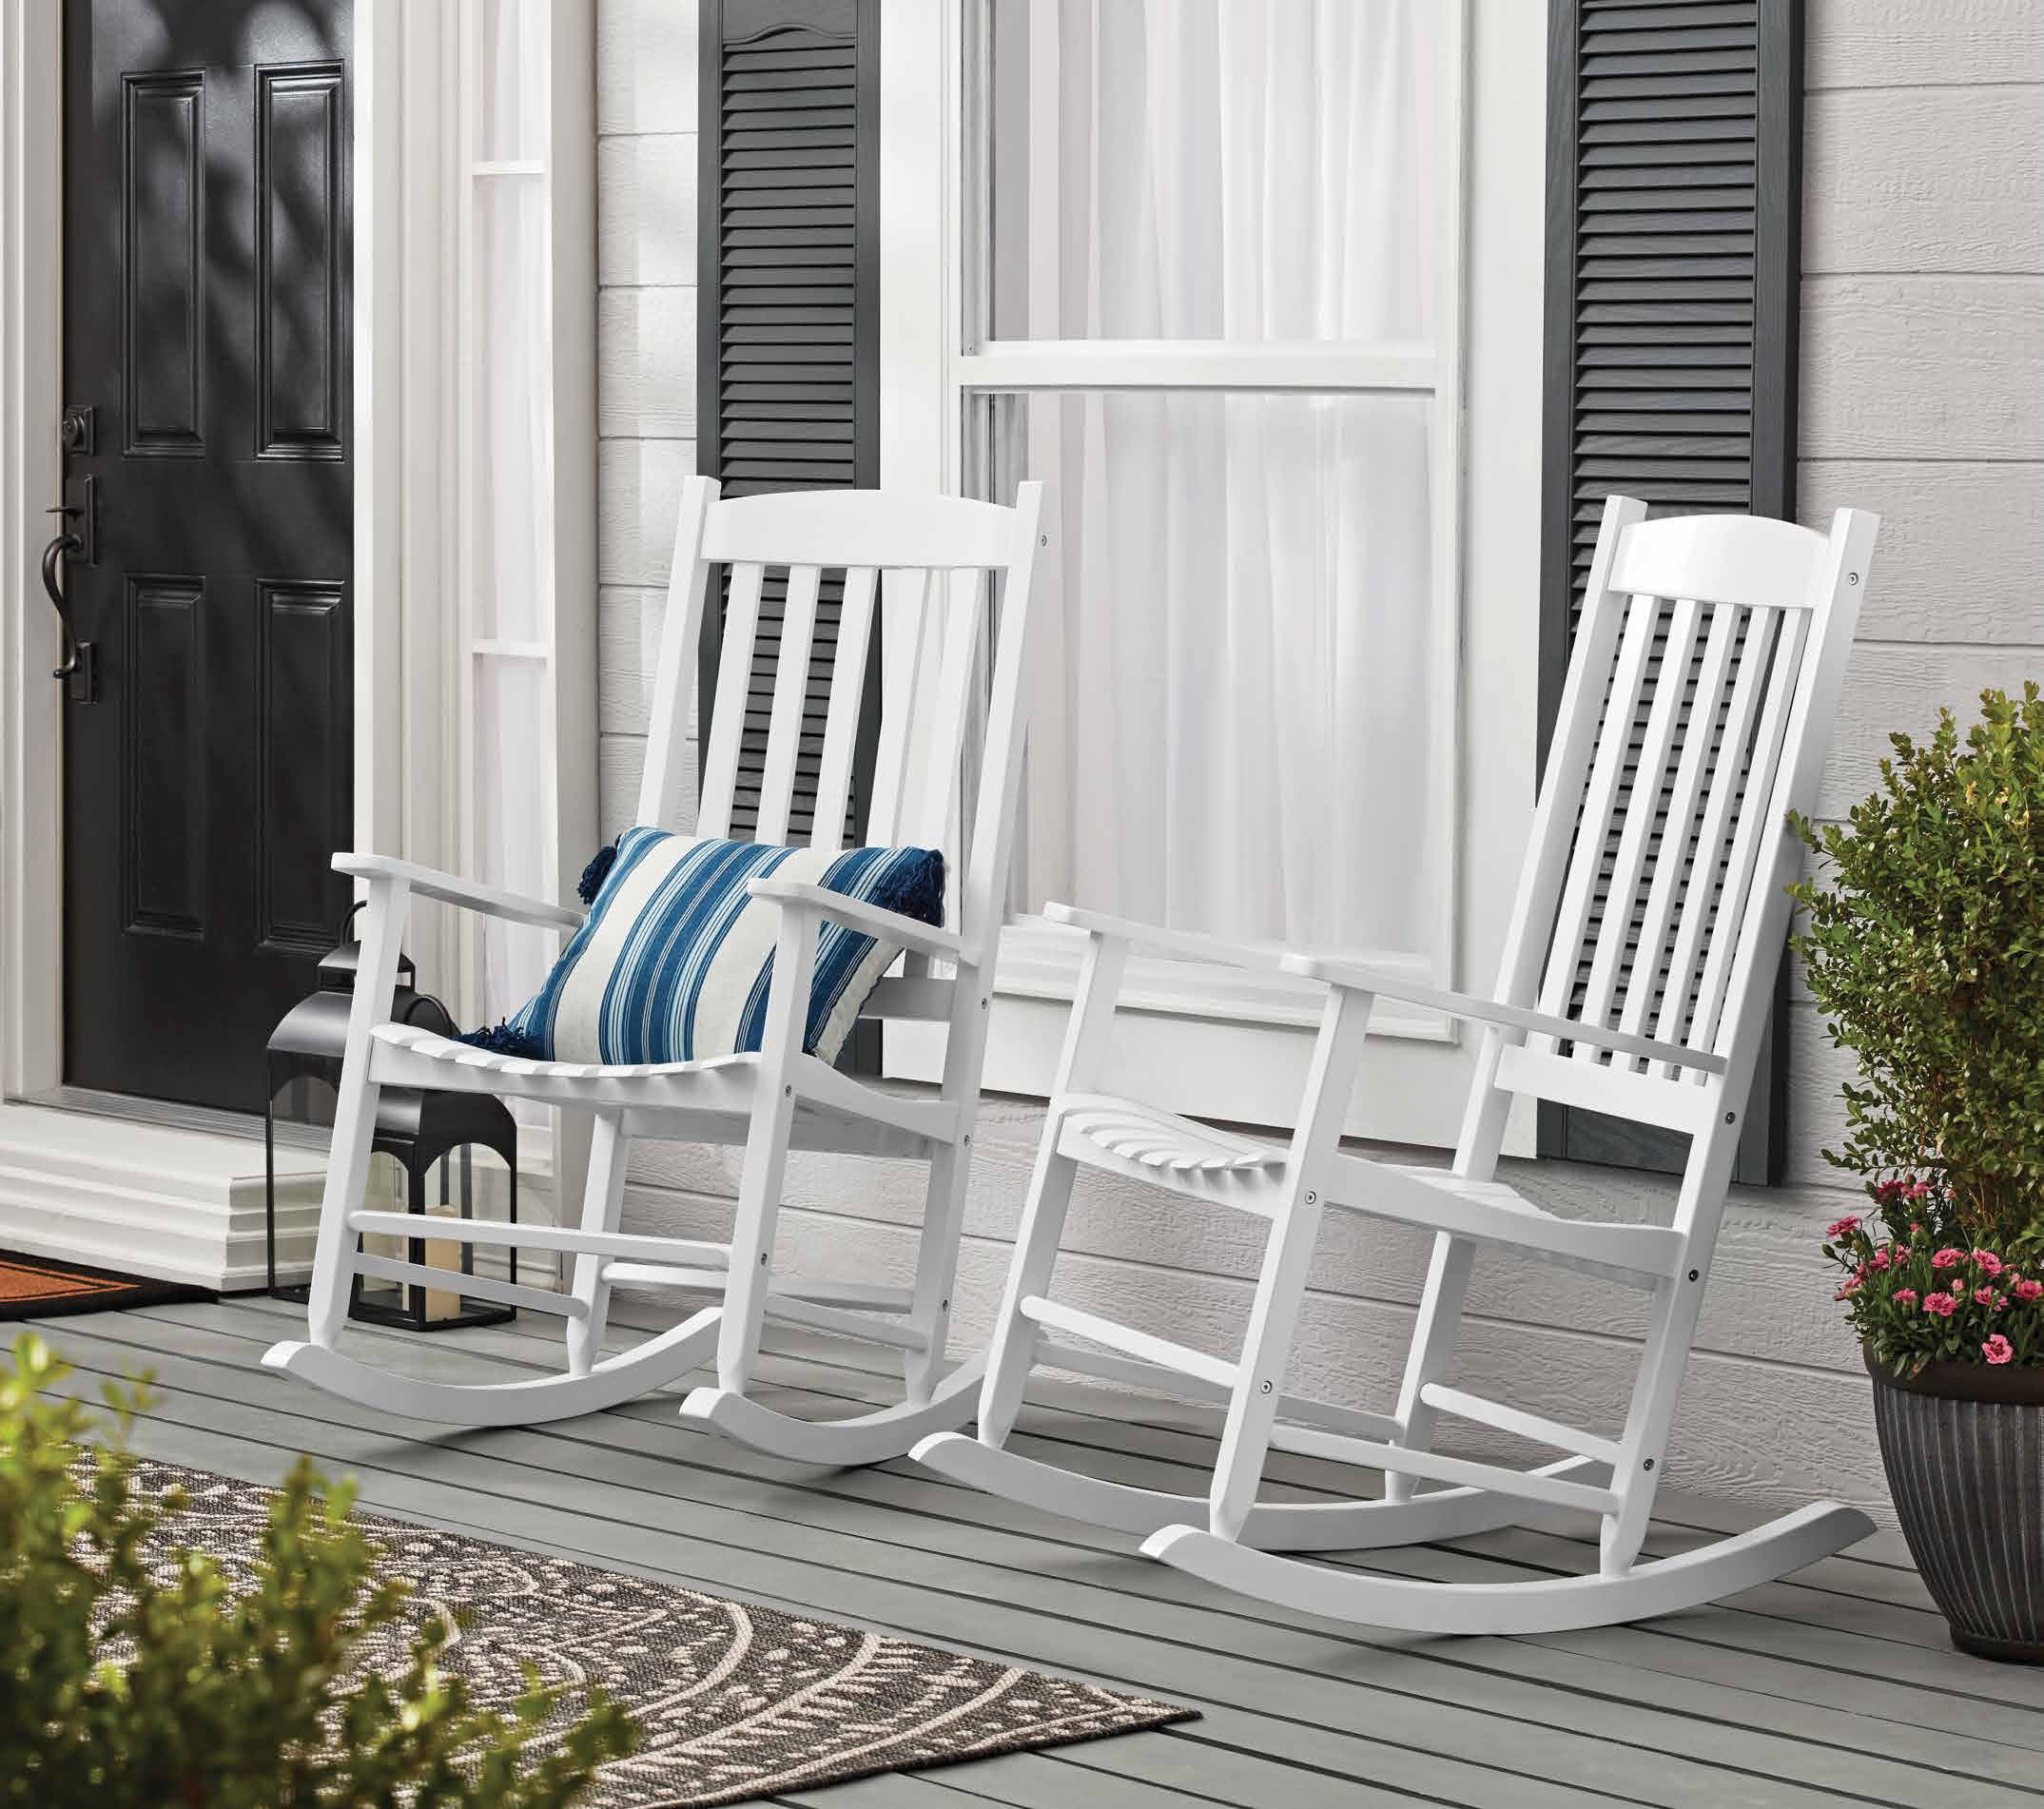 Outdoor Slat Fir Wood Porch Adirondack Rocking Chair Patio Deck Garden Furniture 